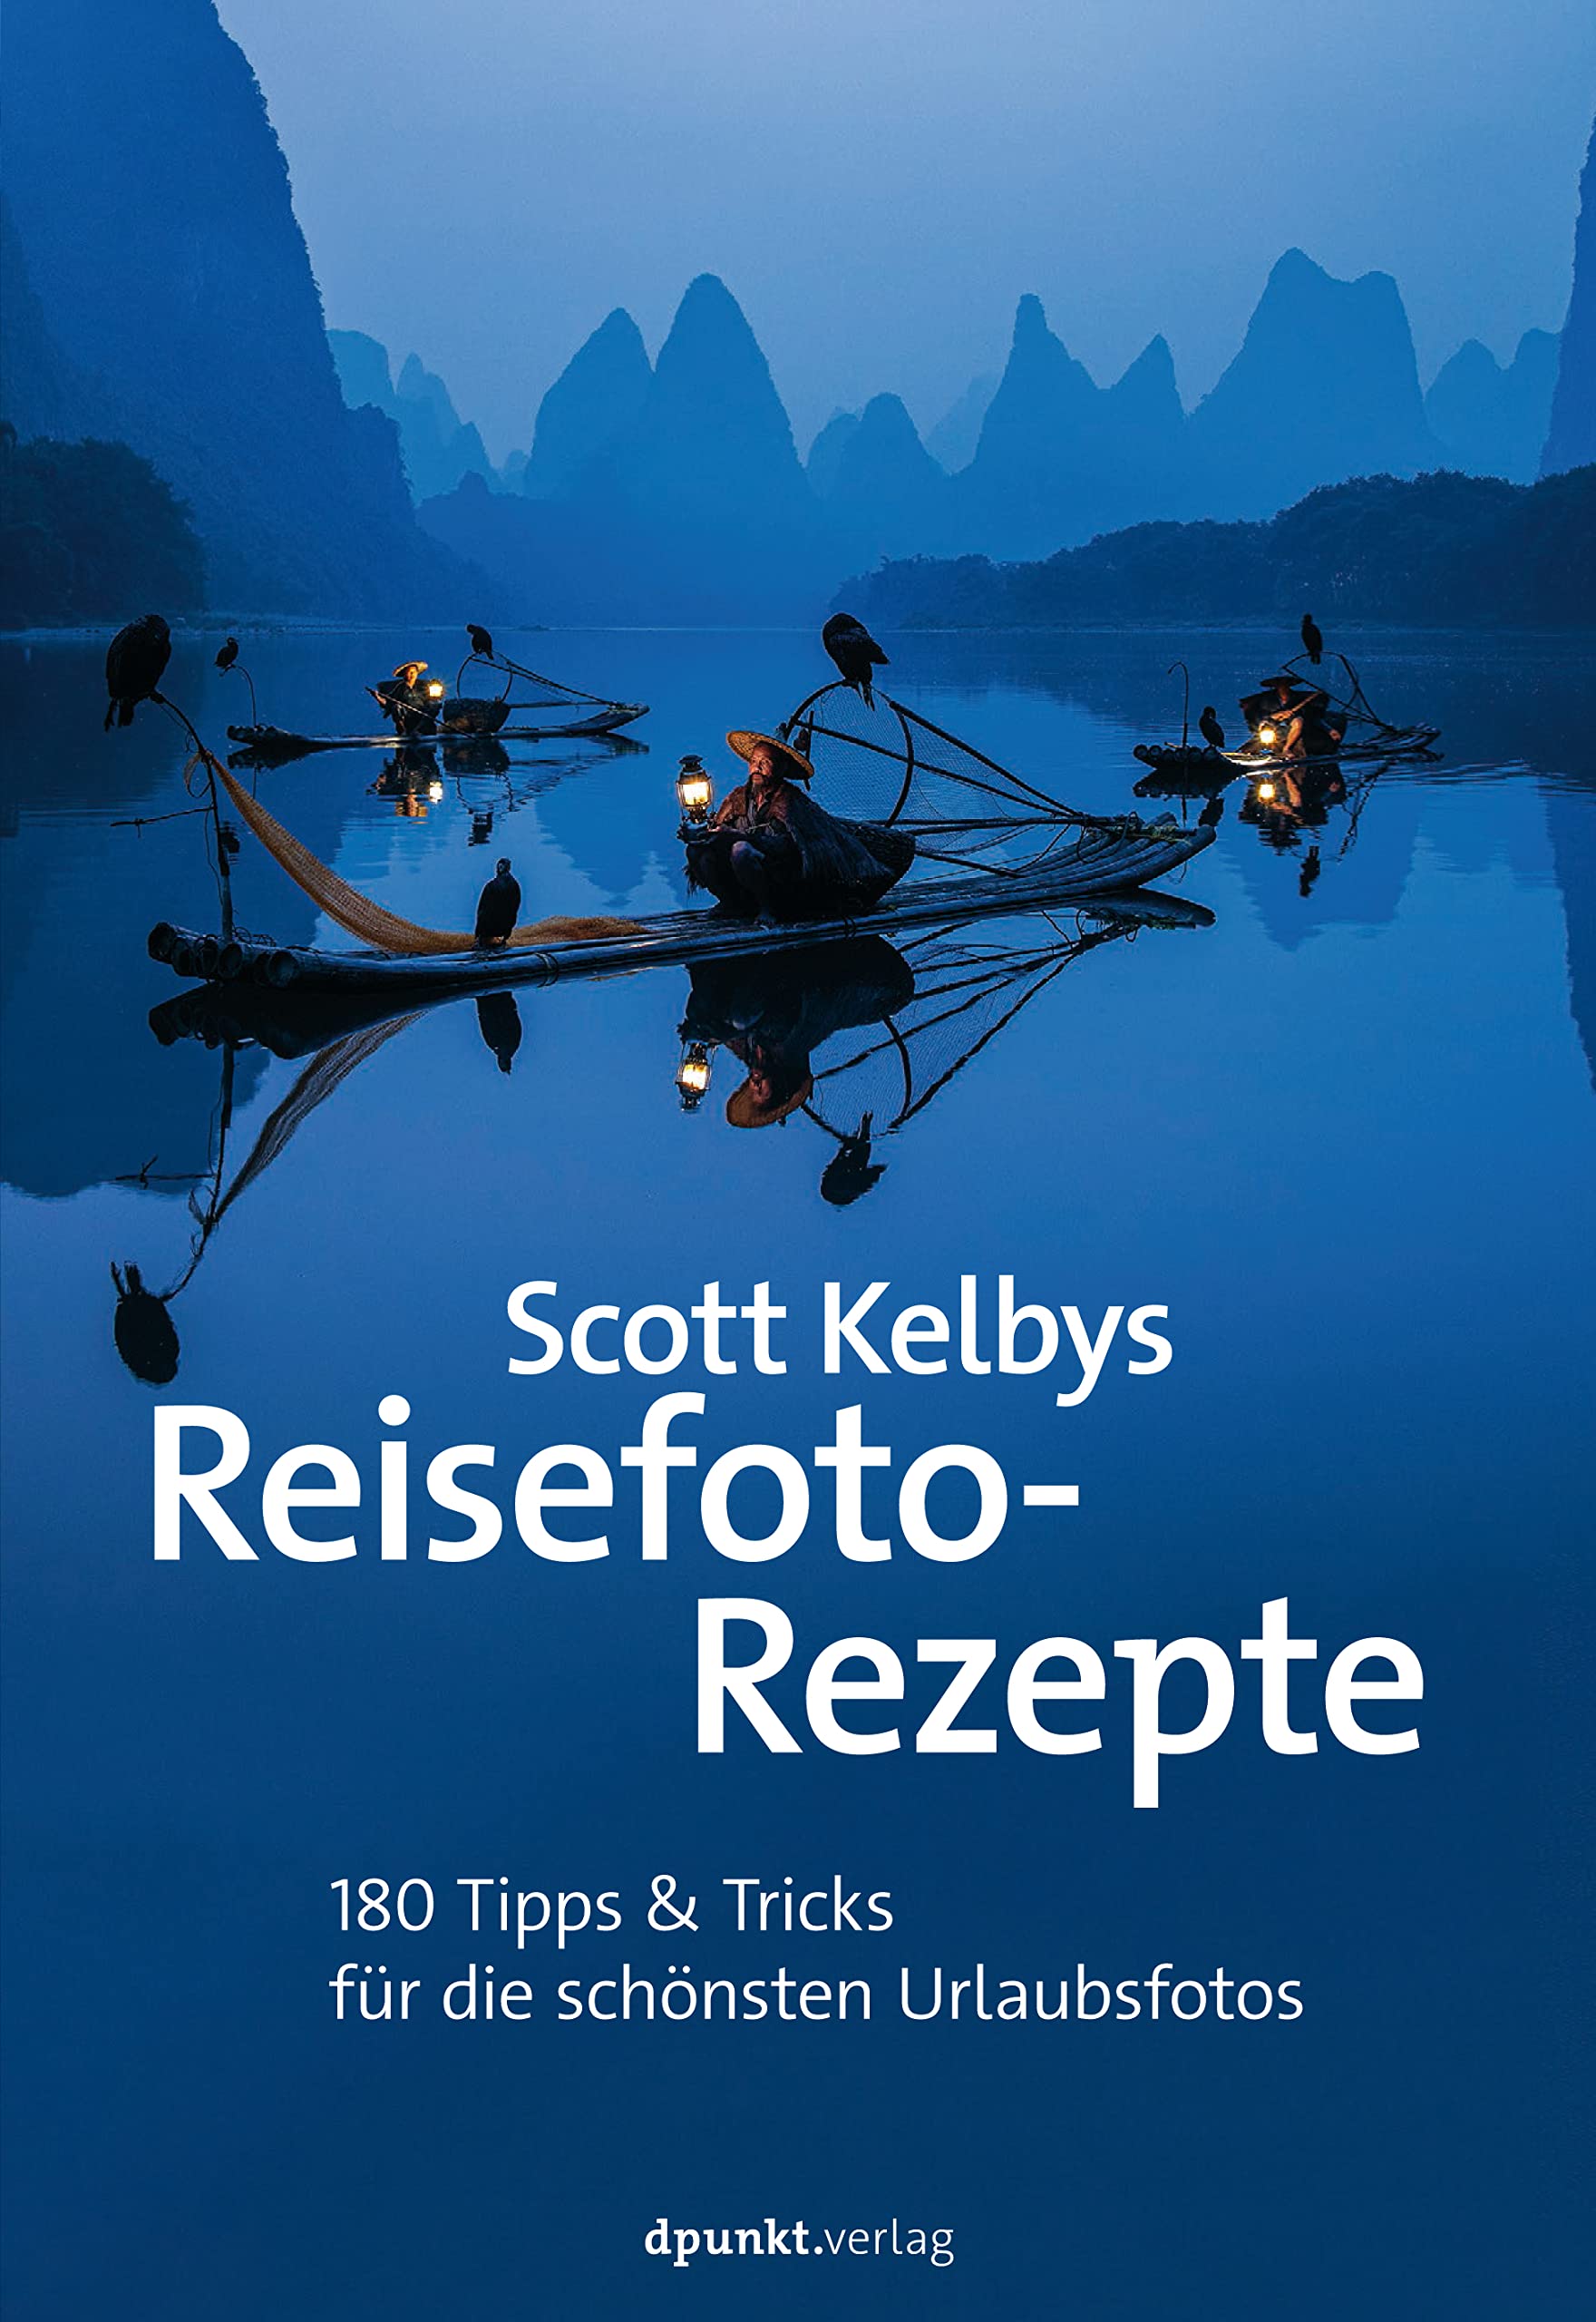 Scott Kelbys Reisefoto-Rezepte: 180 Tipps & Tricks für die schönsten Urlaubsfotos